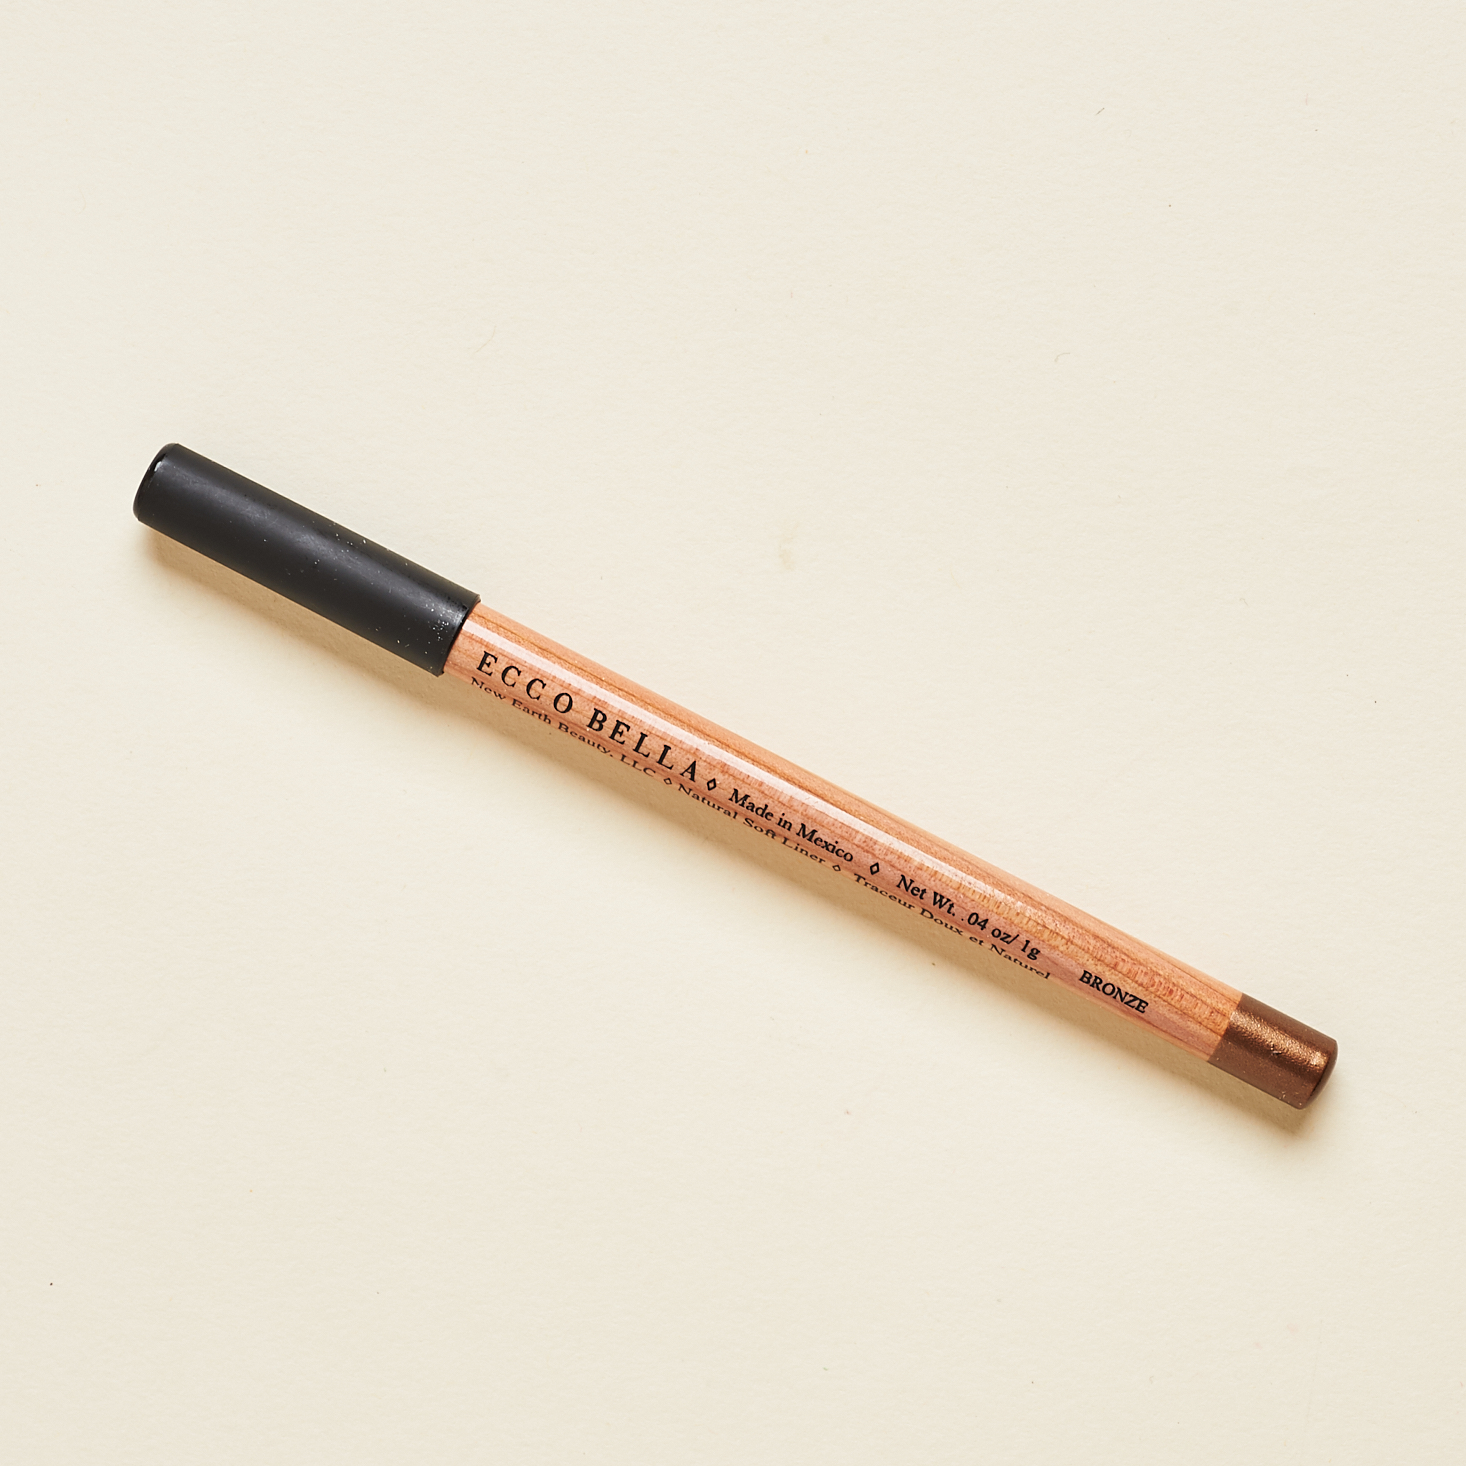 Ecco Bella Soft Eyeliner Pencil in Bronze